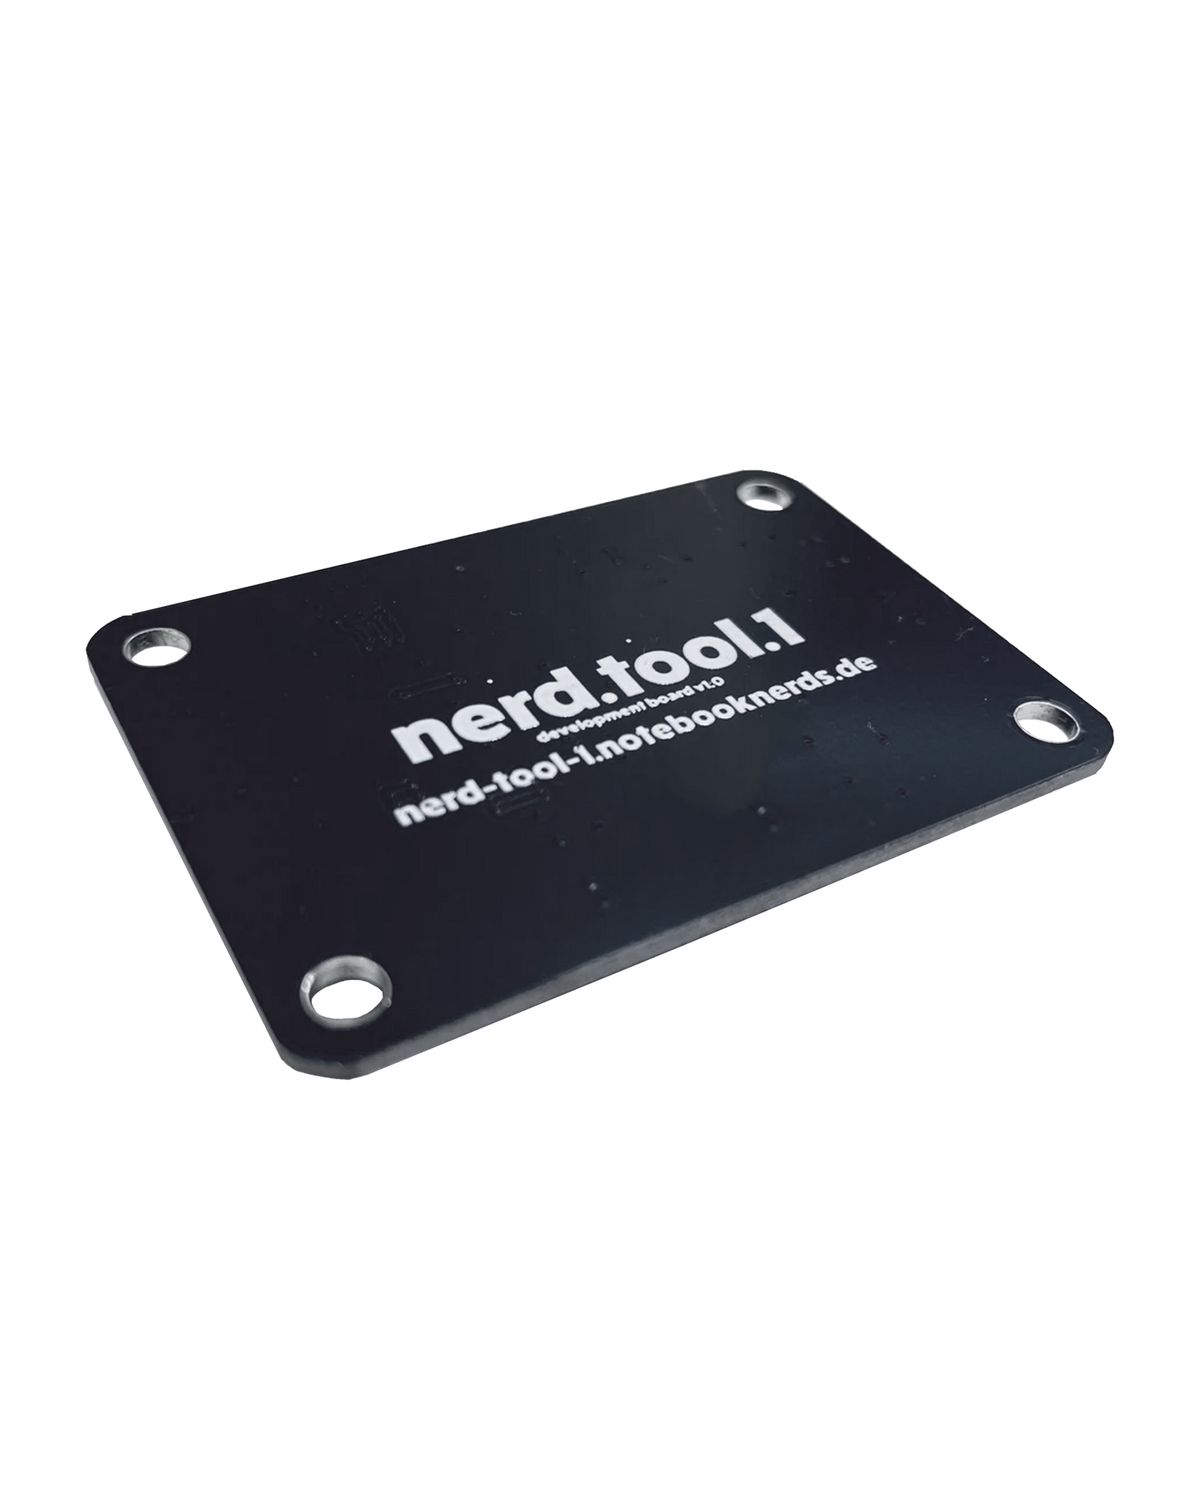 Nerd Tool 1 MacBook Lid Sensor Calibrator